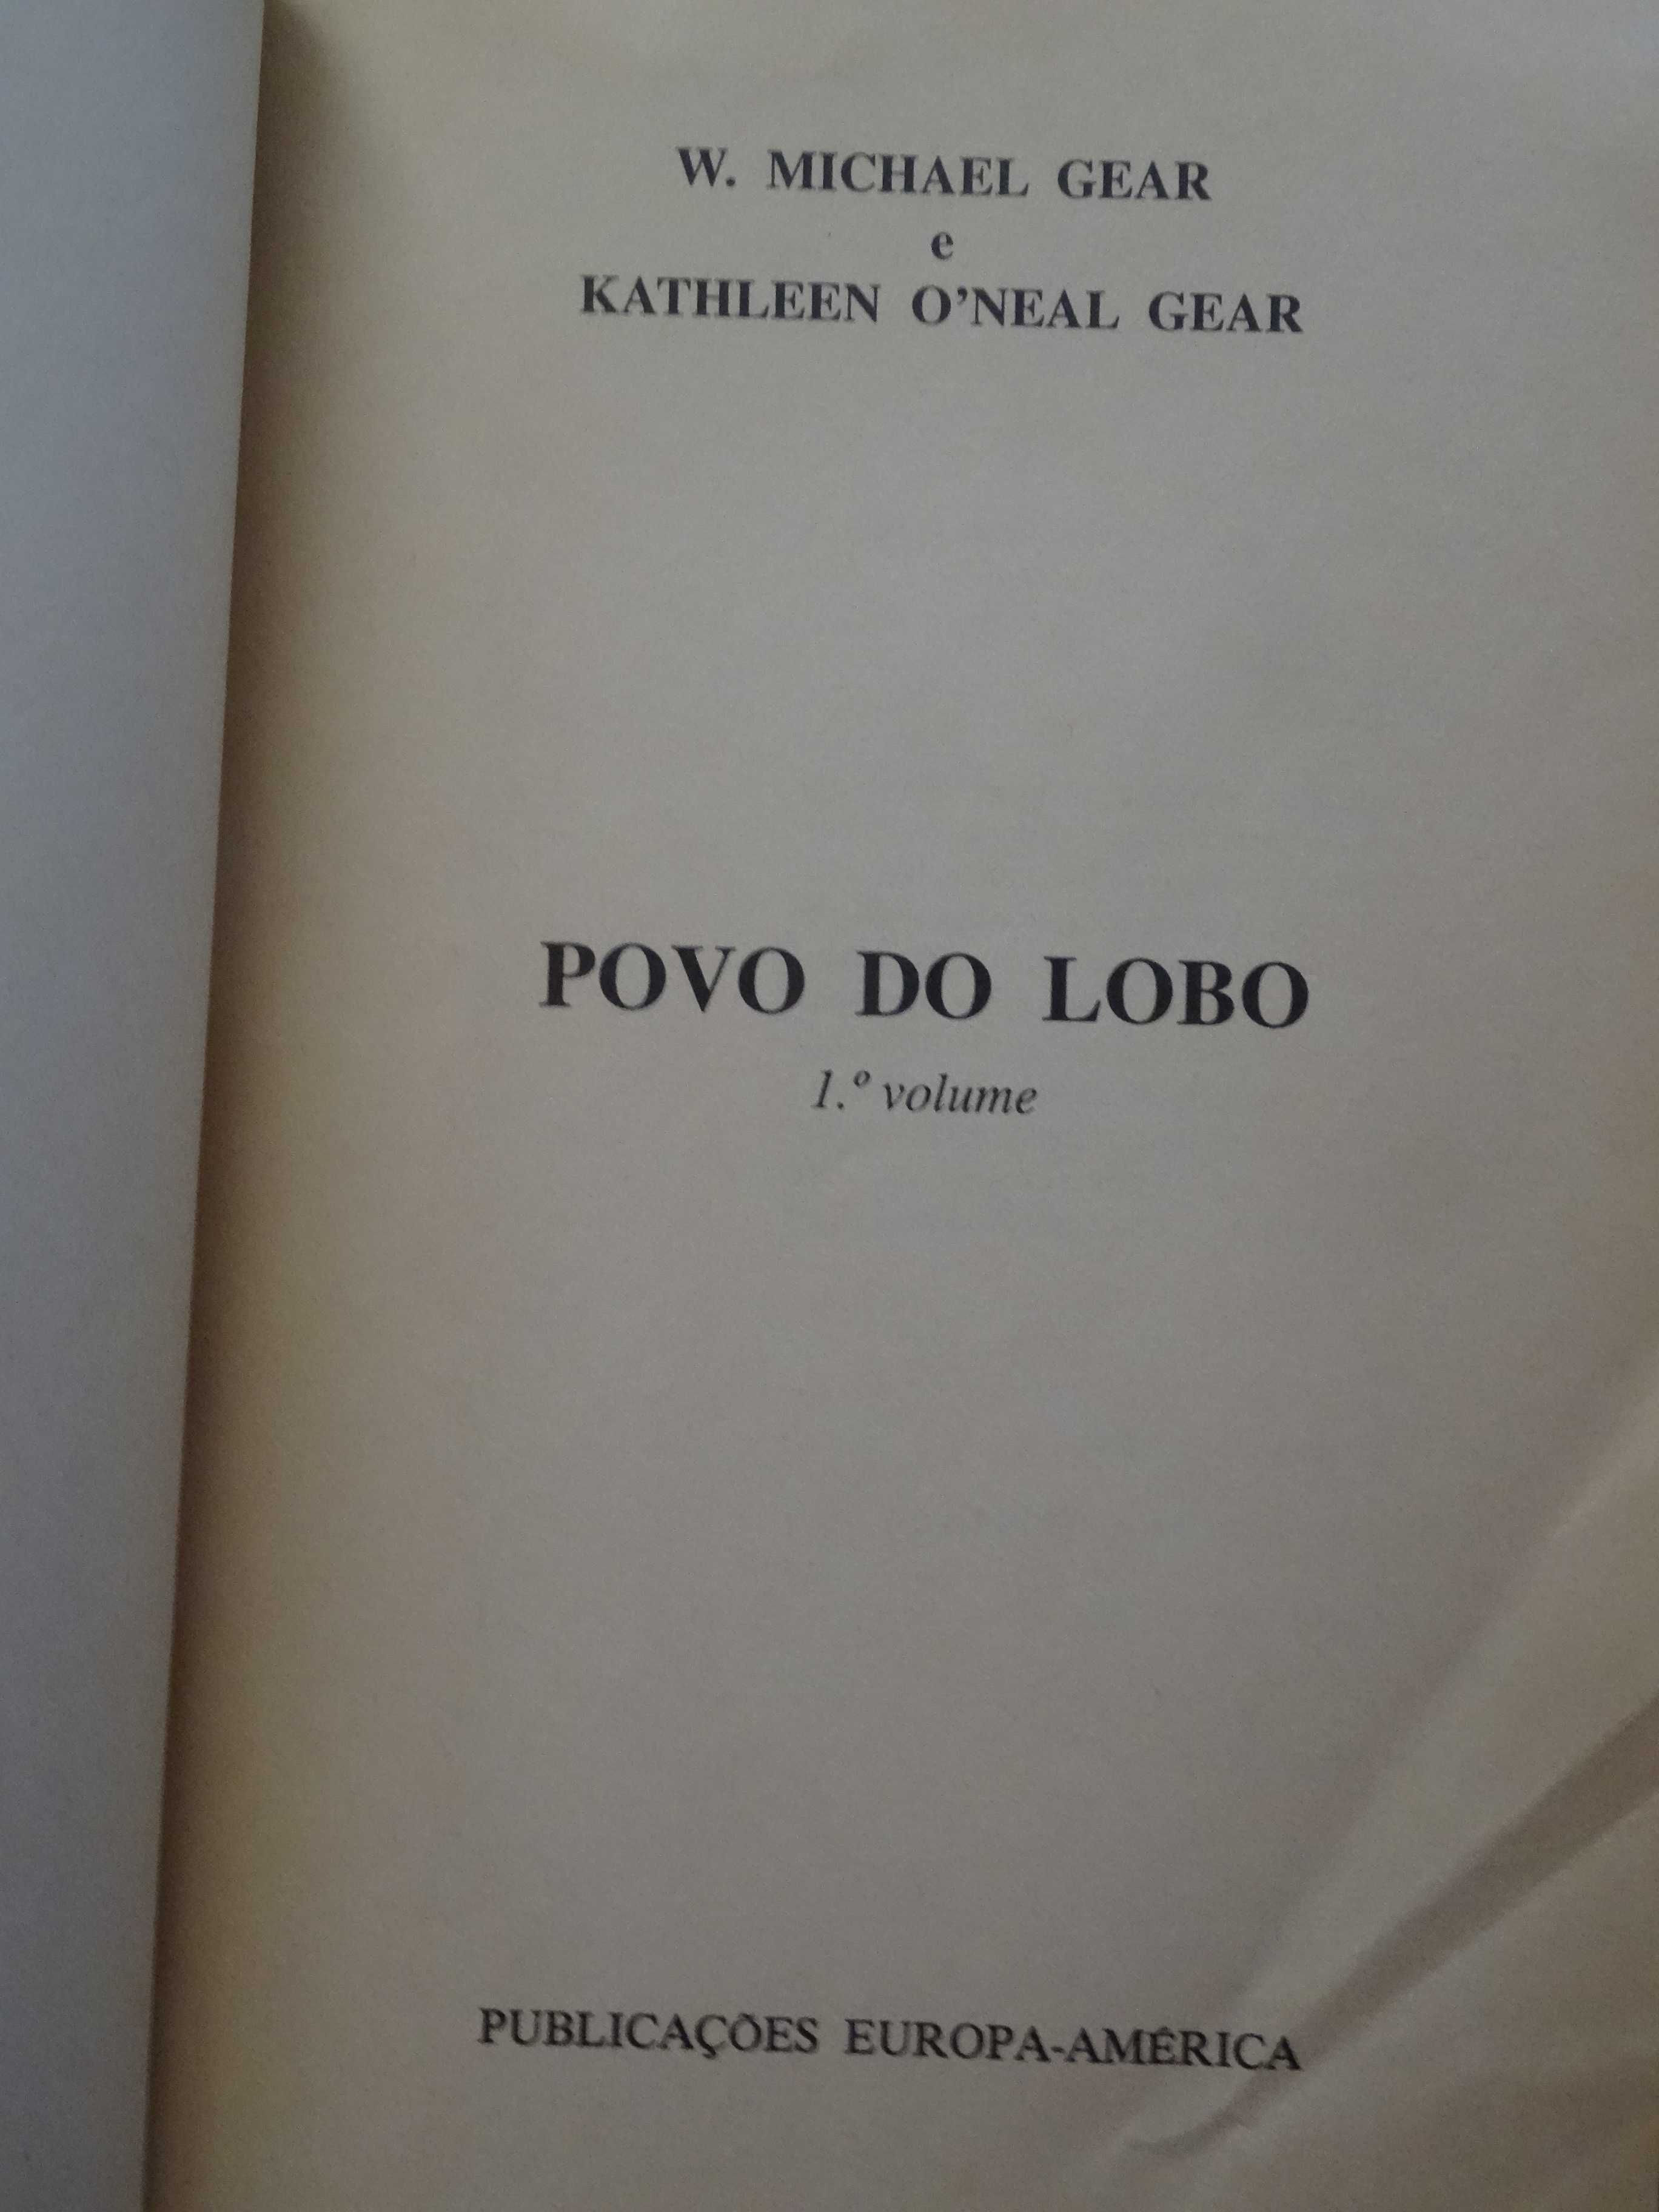 Povo do Lobo de W. Michael Gear e Kathleen O' Neal Gear - 2 Volumes